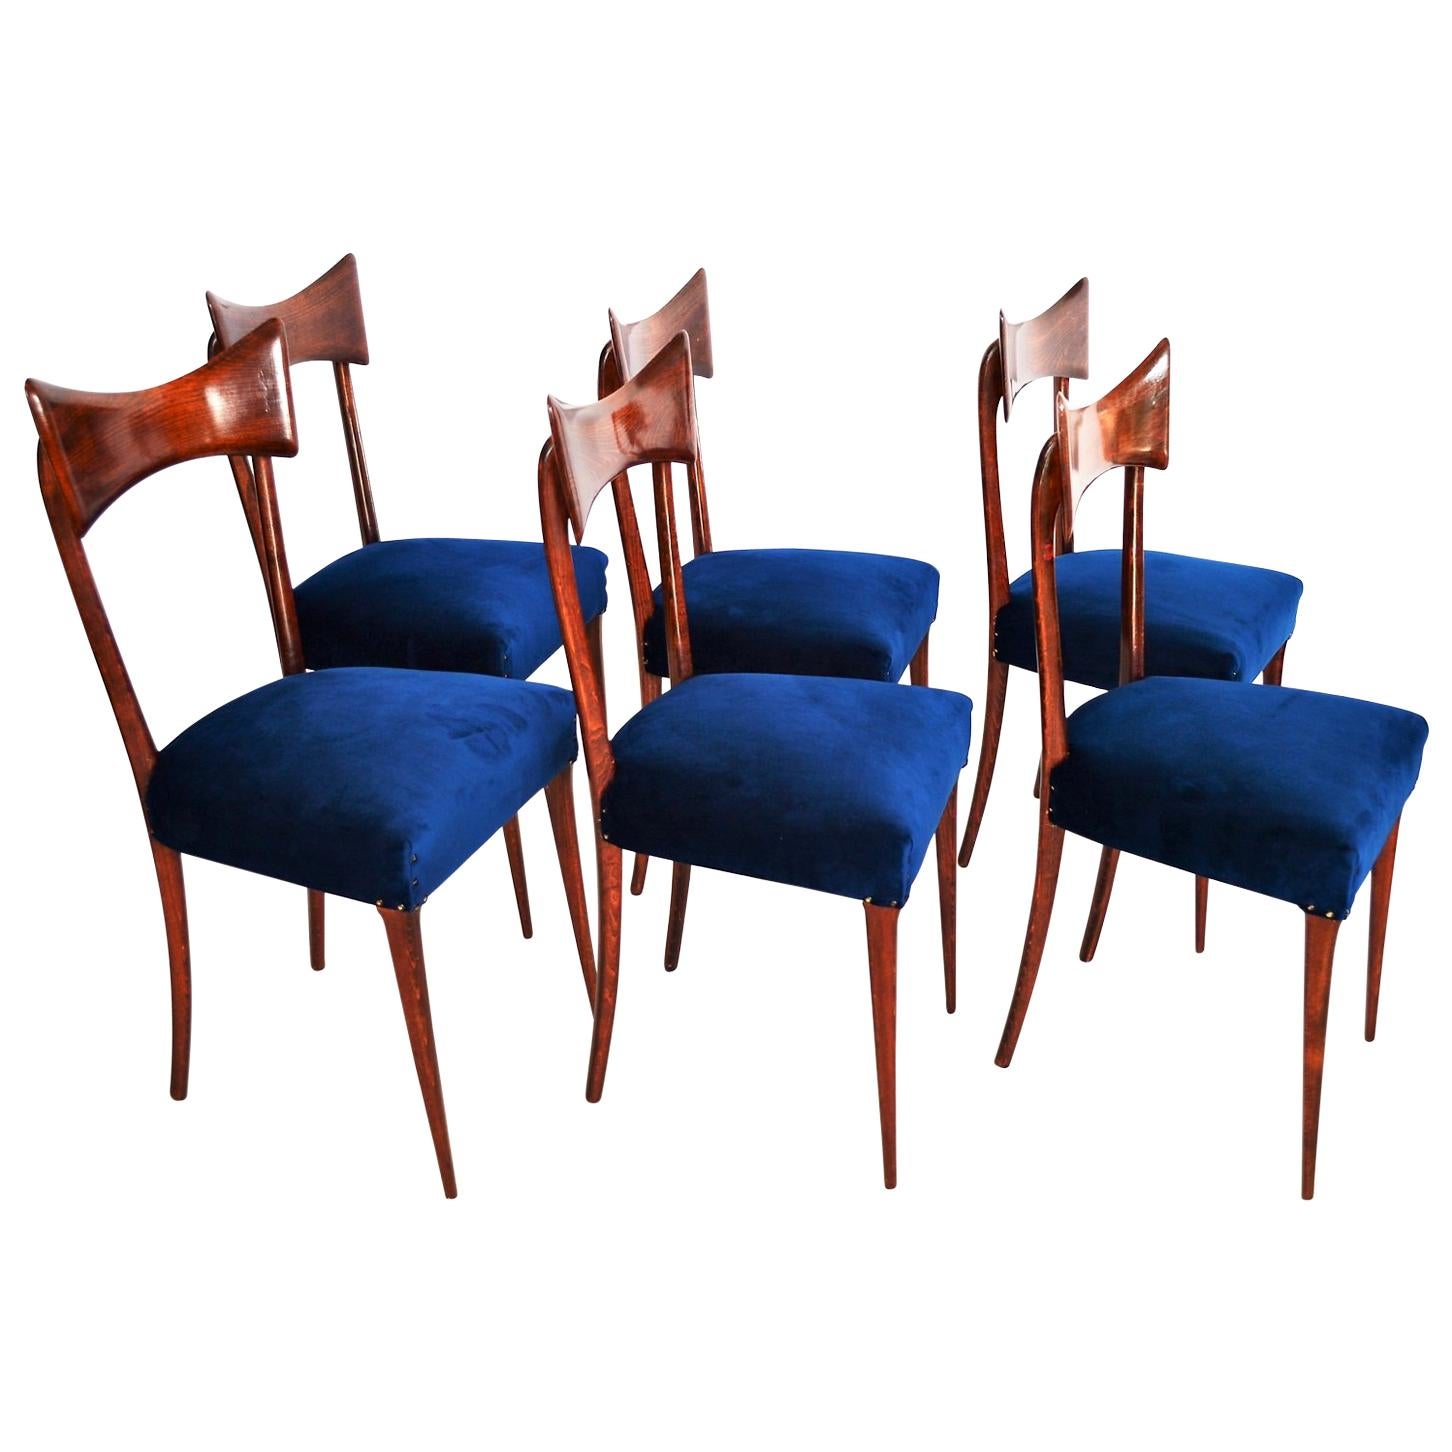 Italian Midcentury Beechwood Dining Chairs Restored in Blue Velvet, 1950s